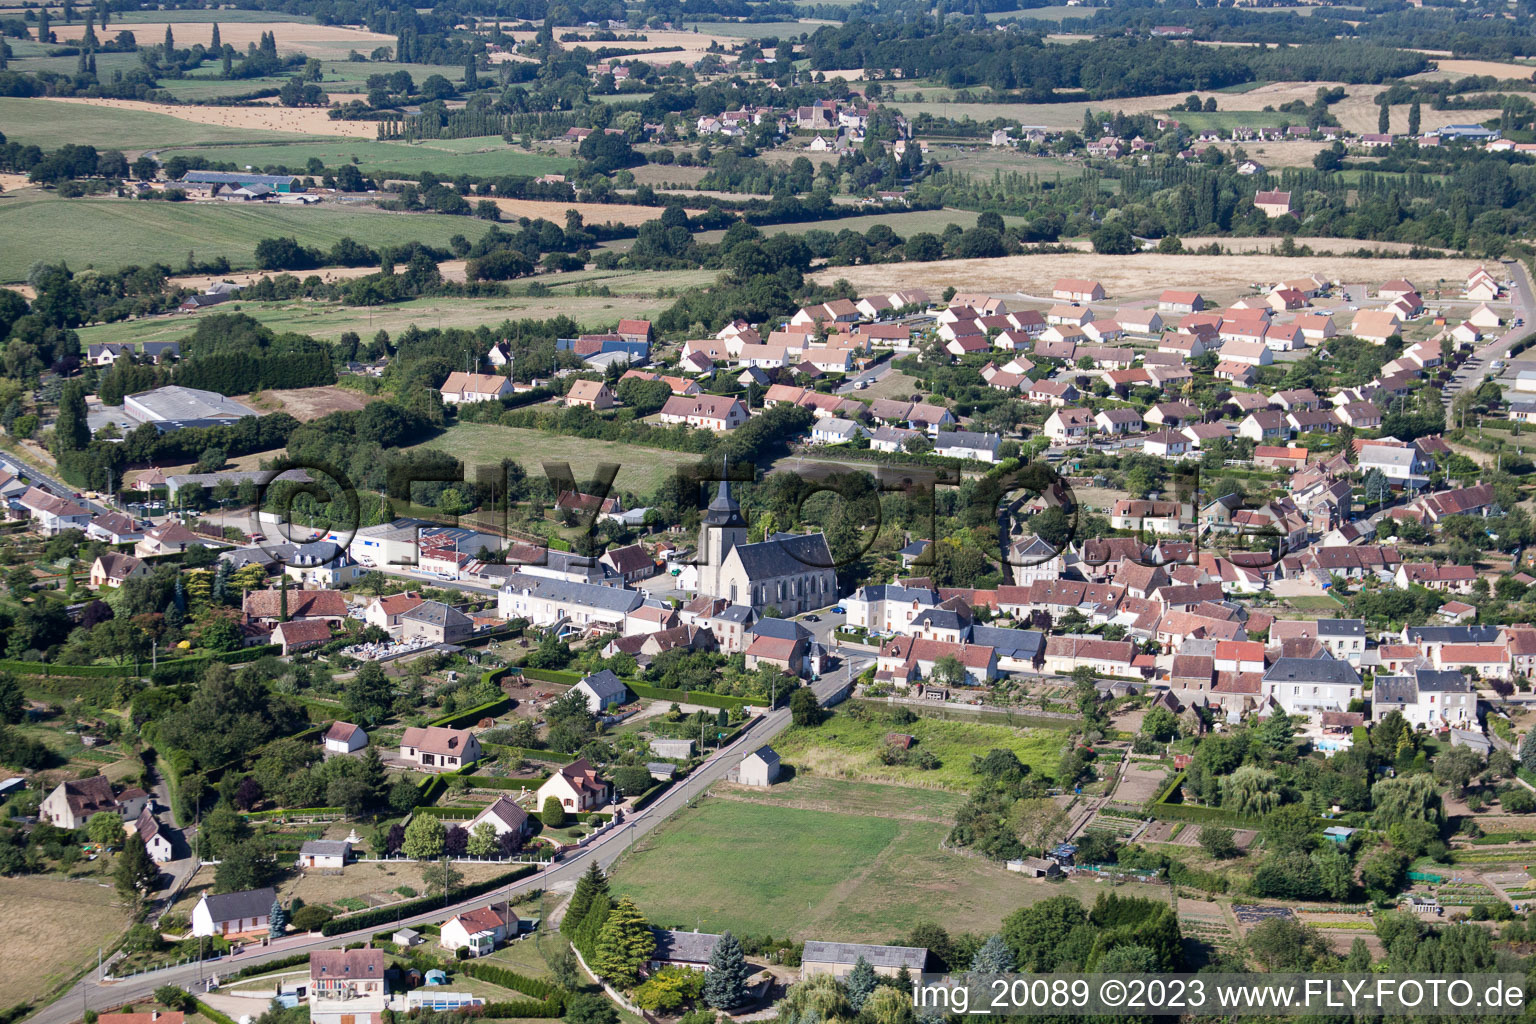 Lamnay dans le département Sarthe, France depuis l'avion